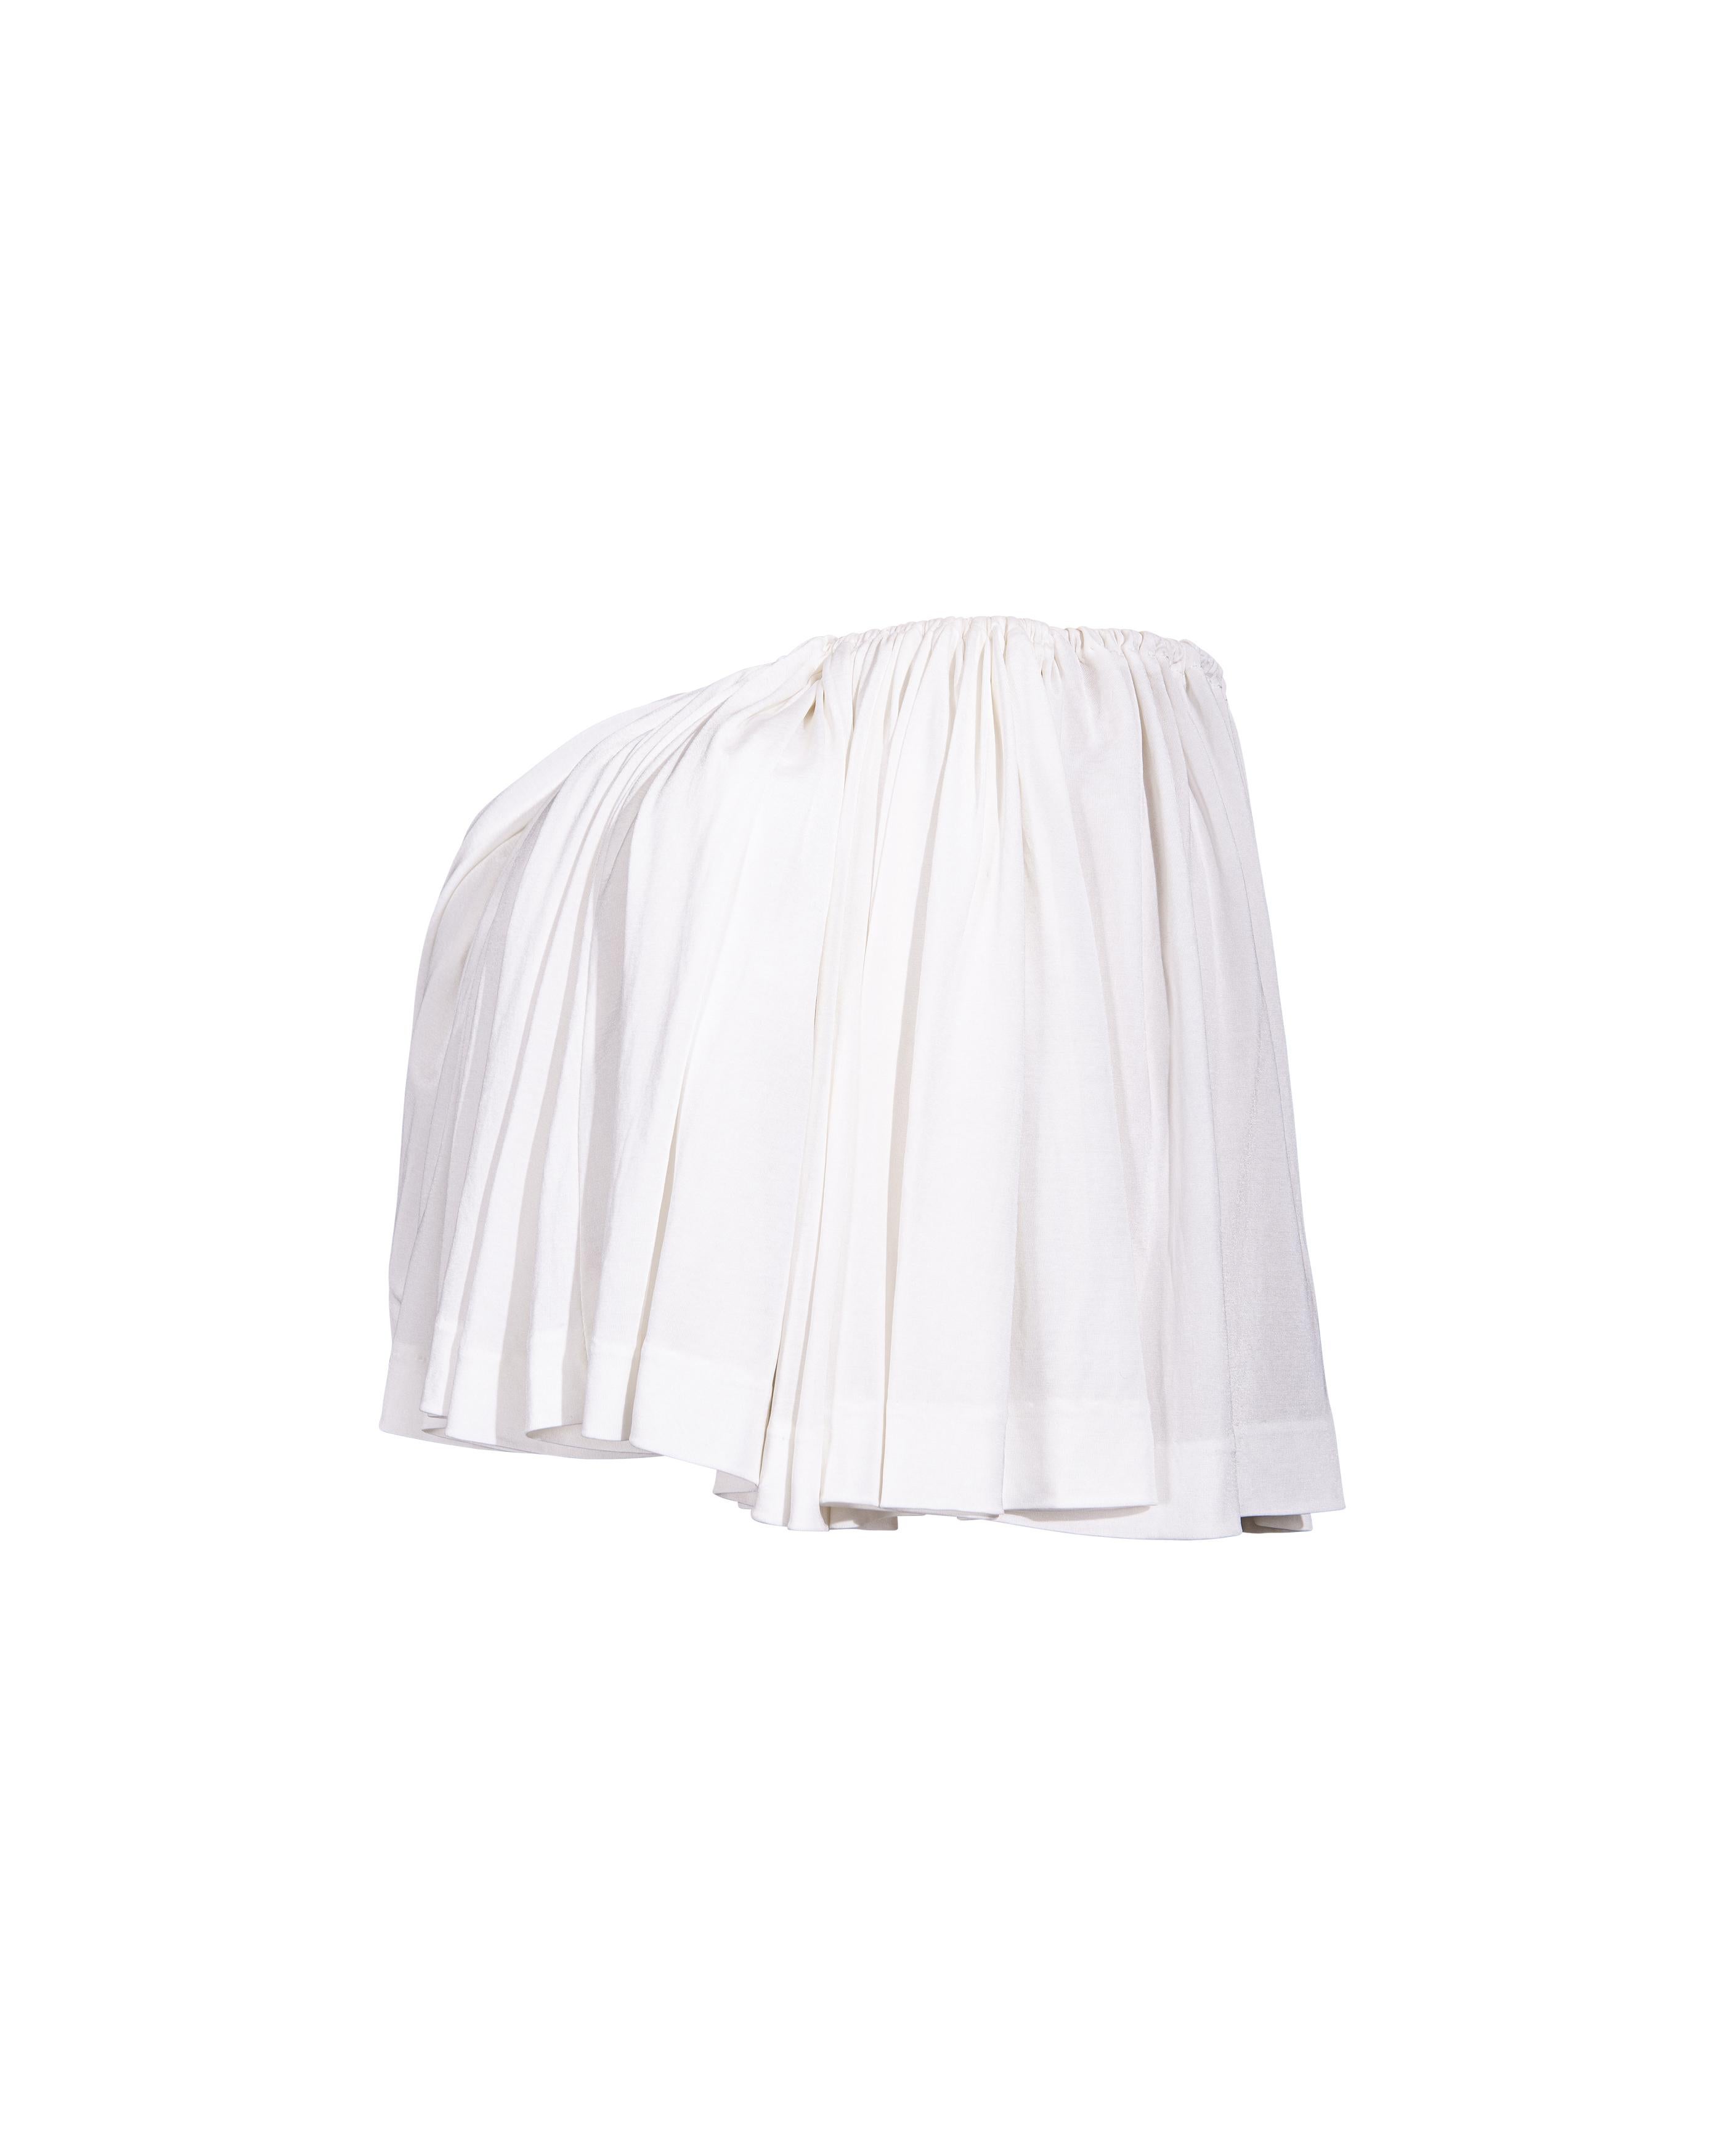 S/S 1988 Vivienne Westwood White Mini jupe avec buste amovible 2